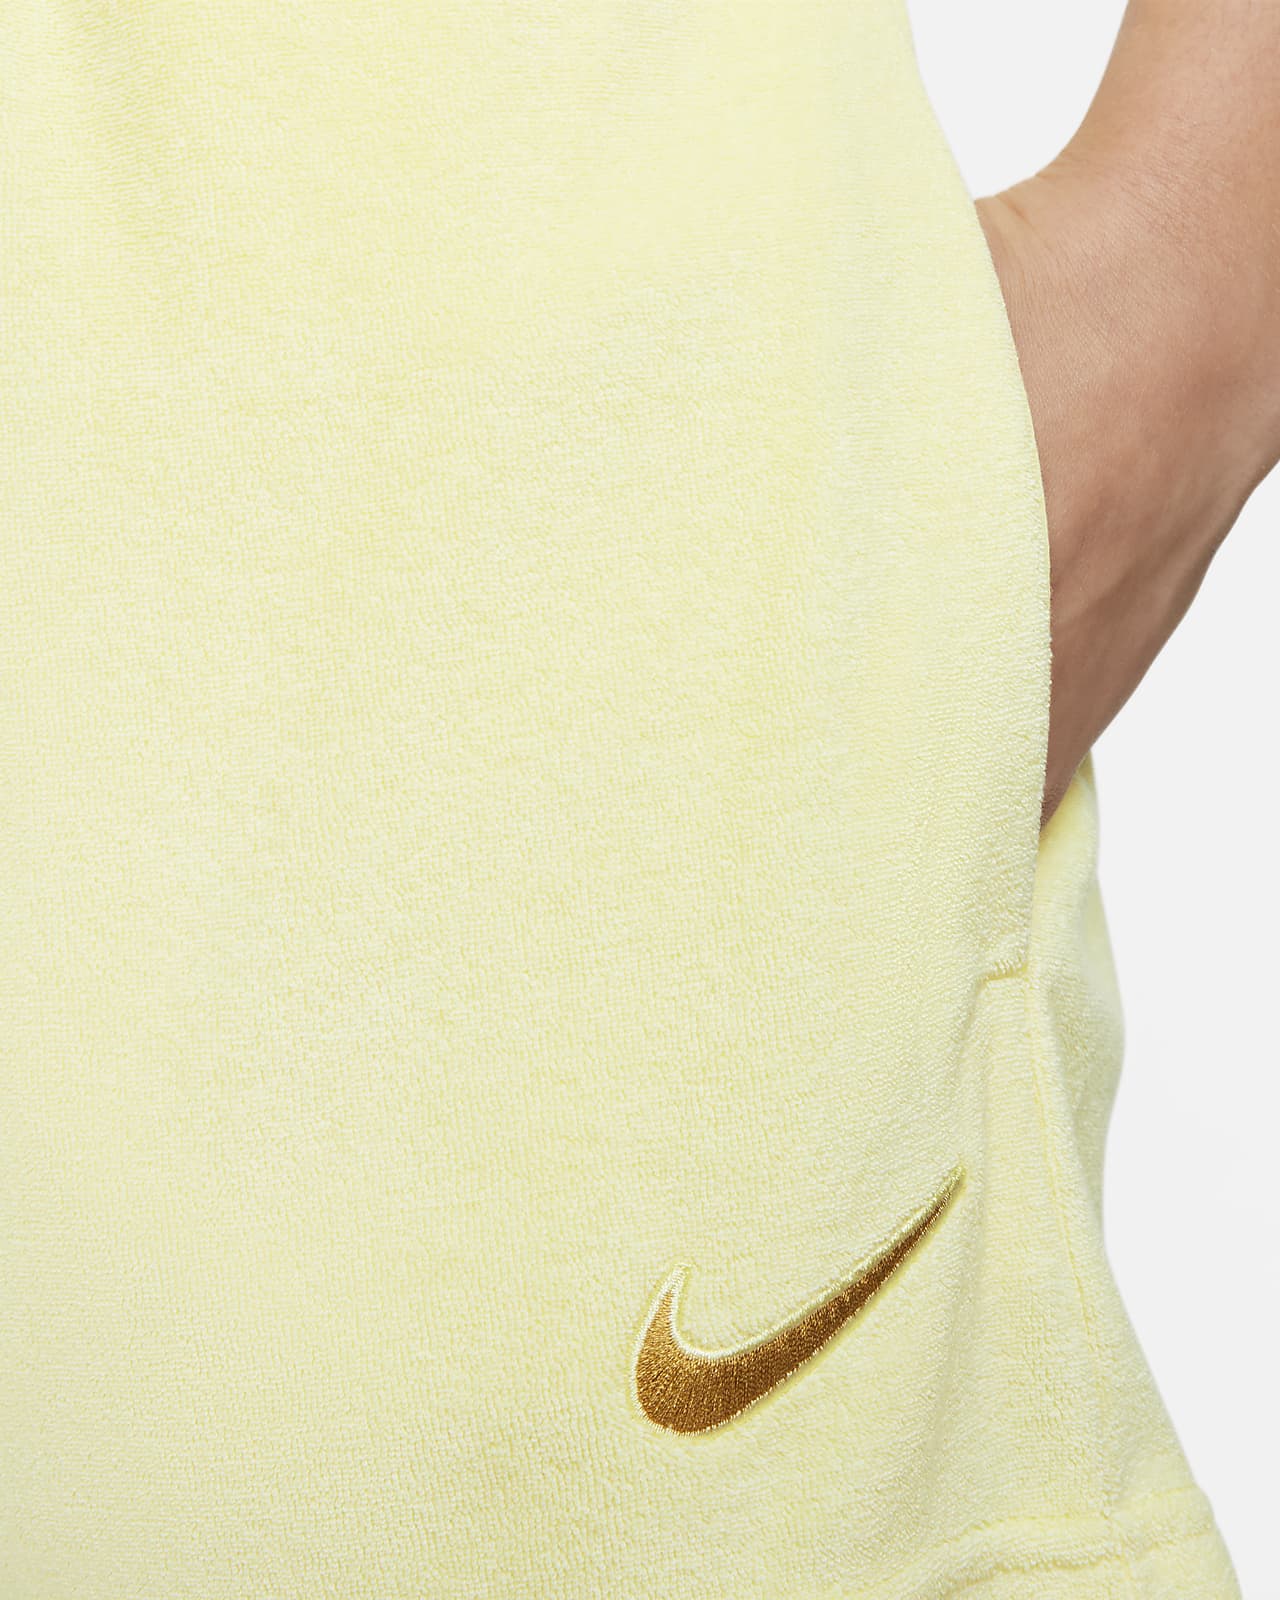 Nike Women's Sportswear Essential Terry Shorts